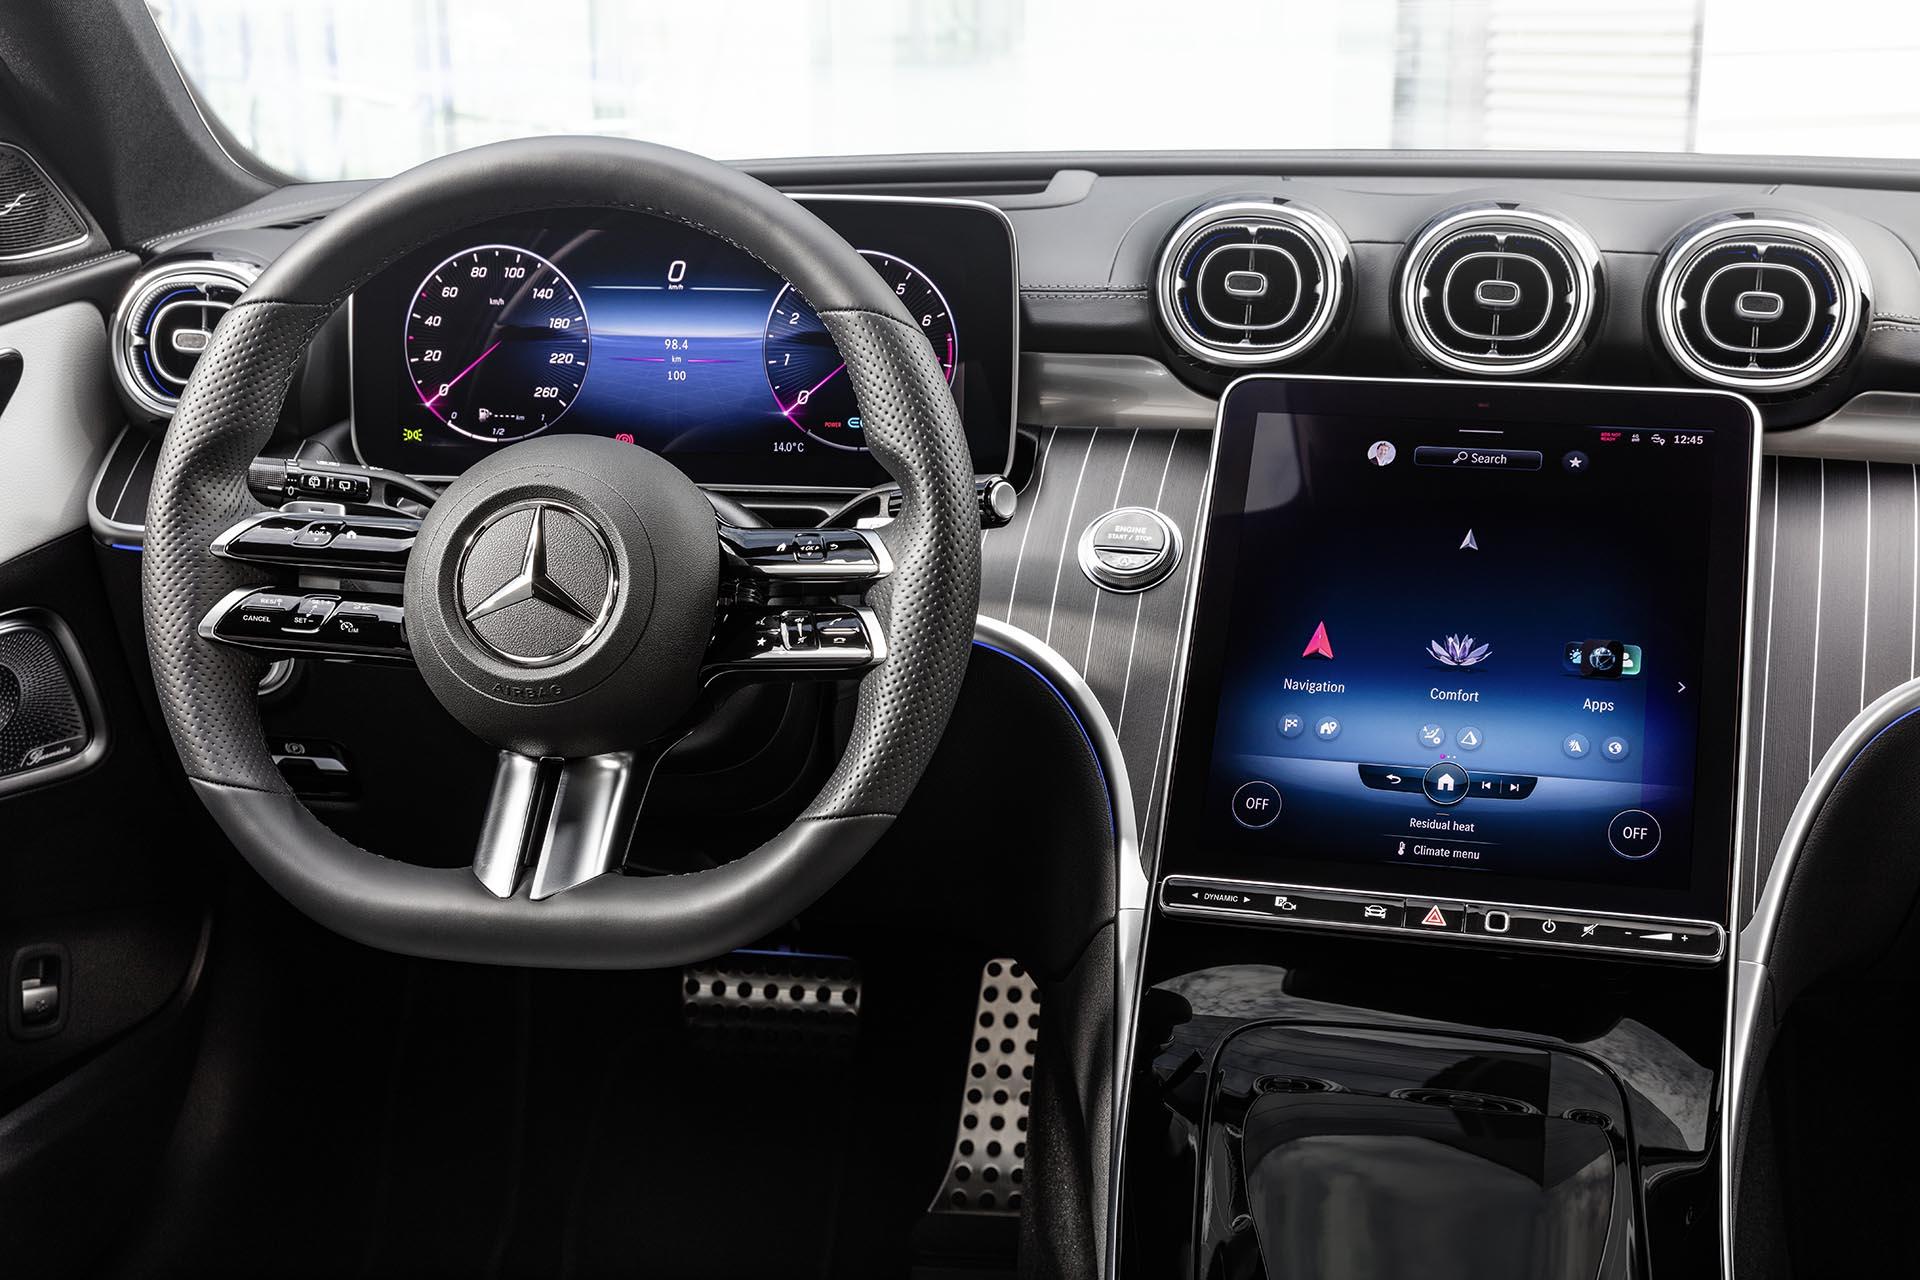 Mercedes C 200 Estate Luxury Line (2023) interieur overzicht